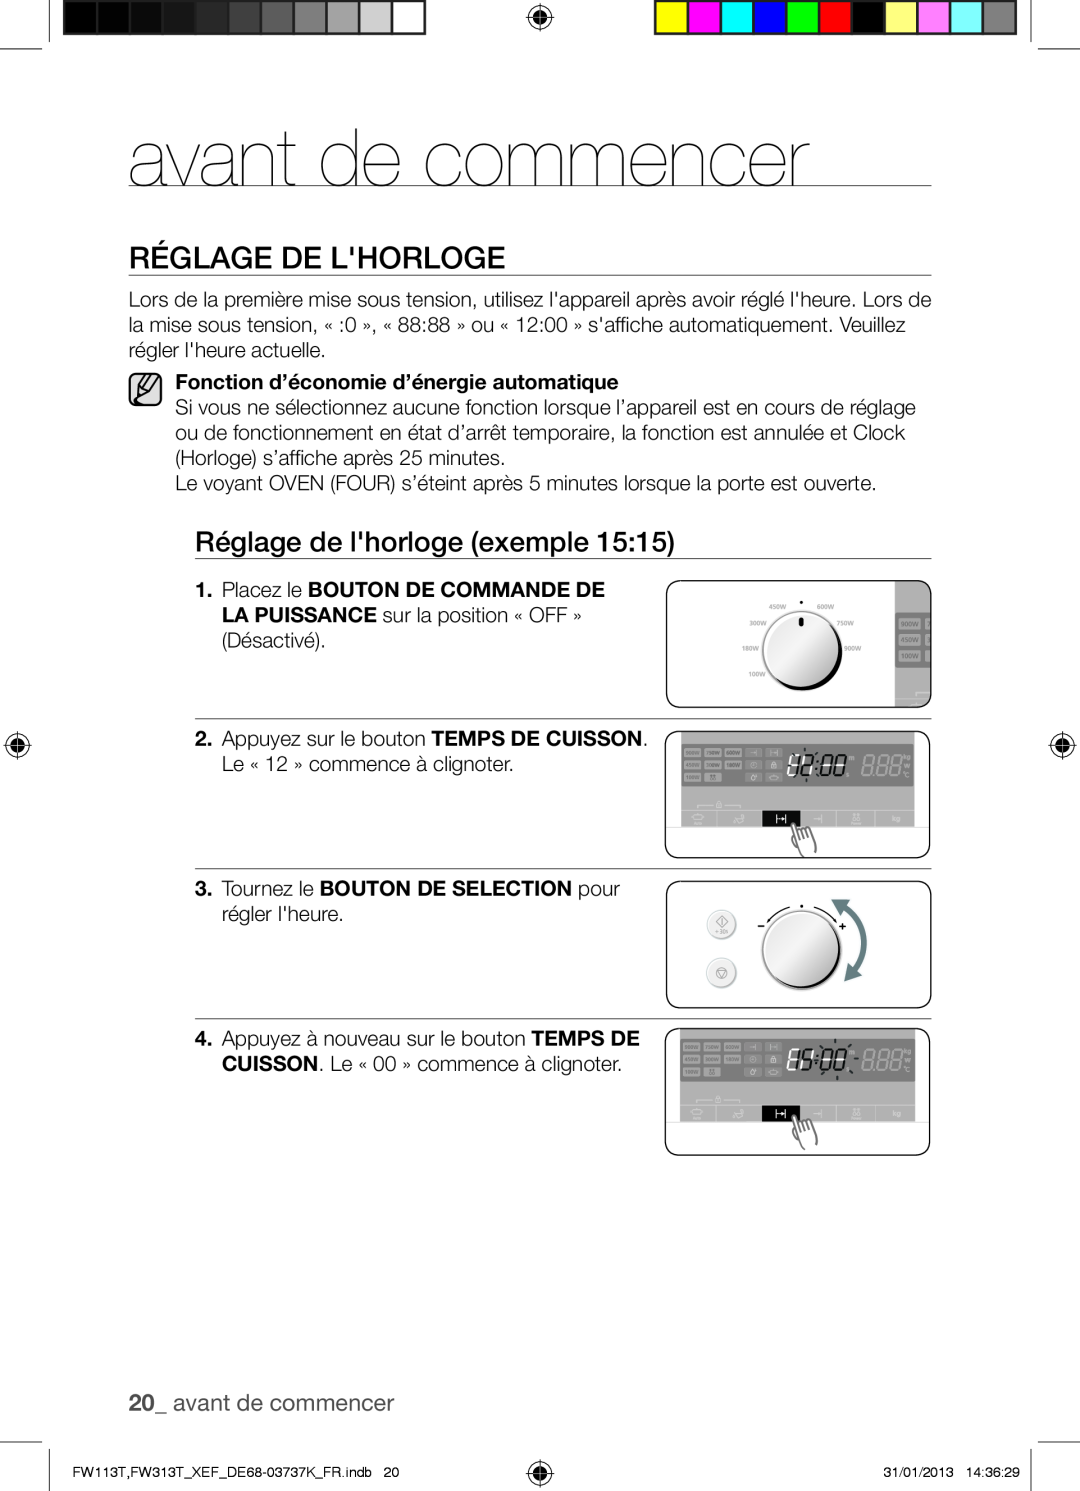 Samsung FW113T002/XEF manual avant de commencer, Réglage De Lhorloge 